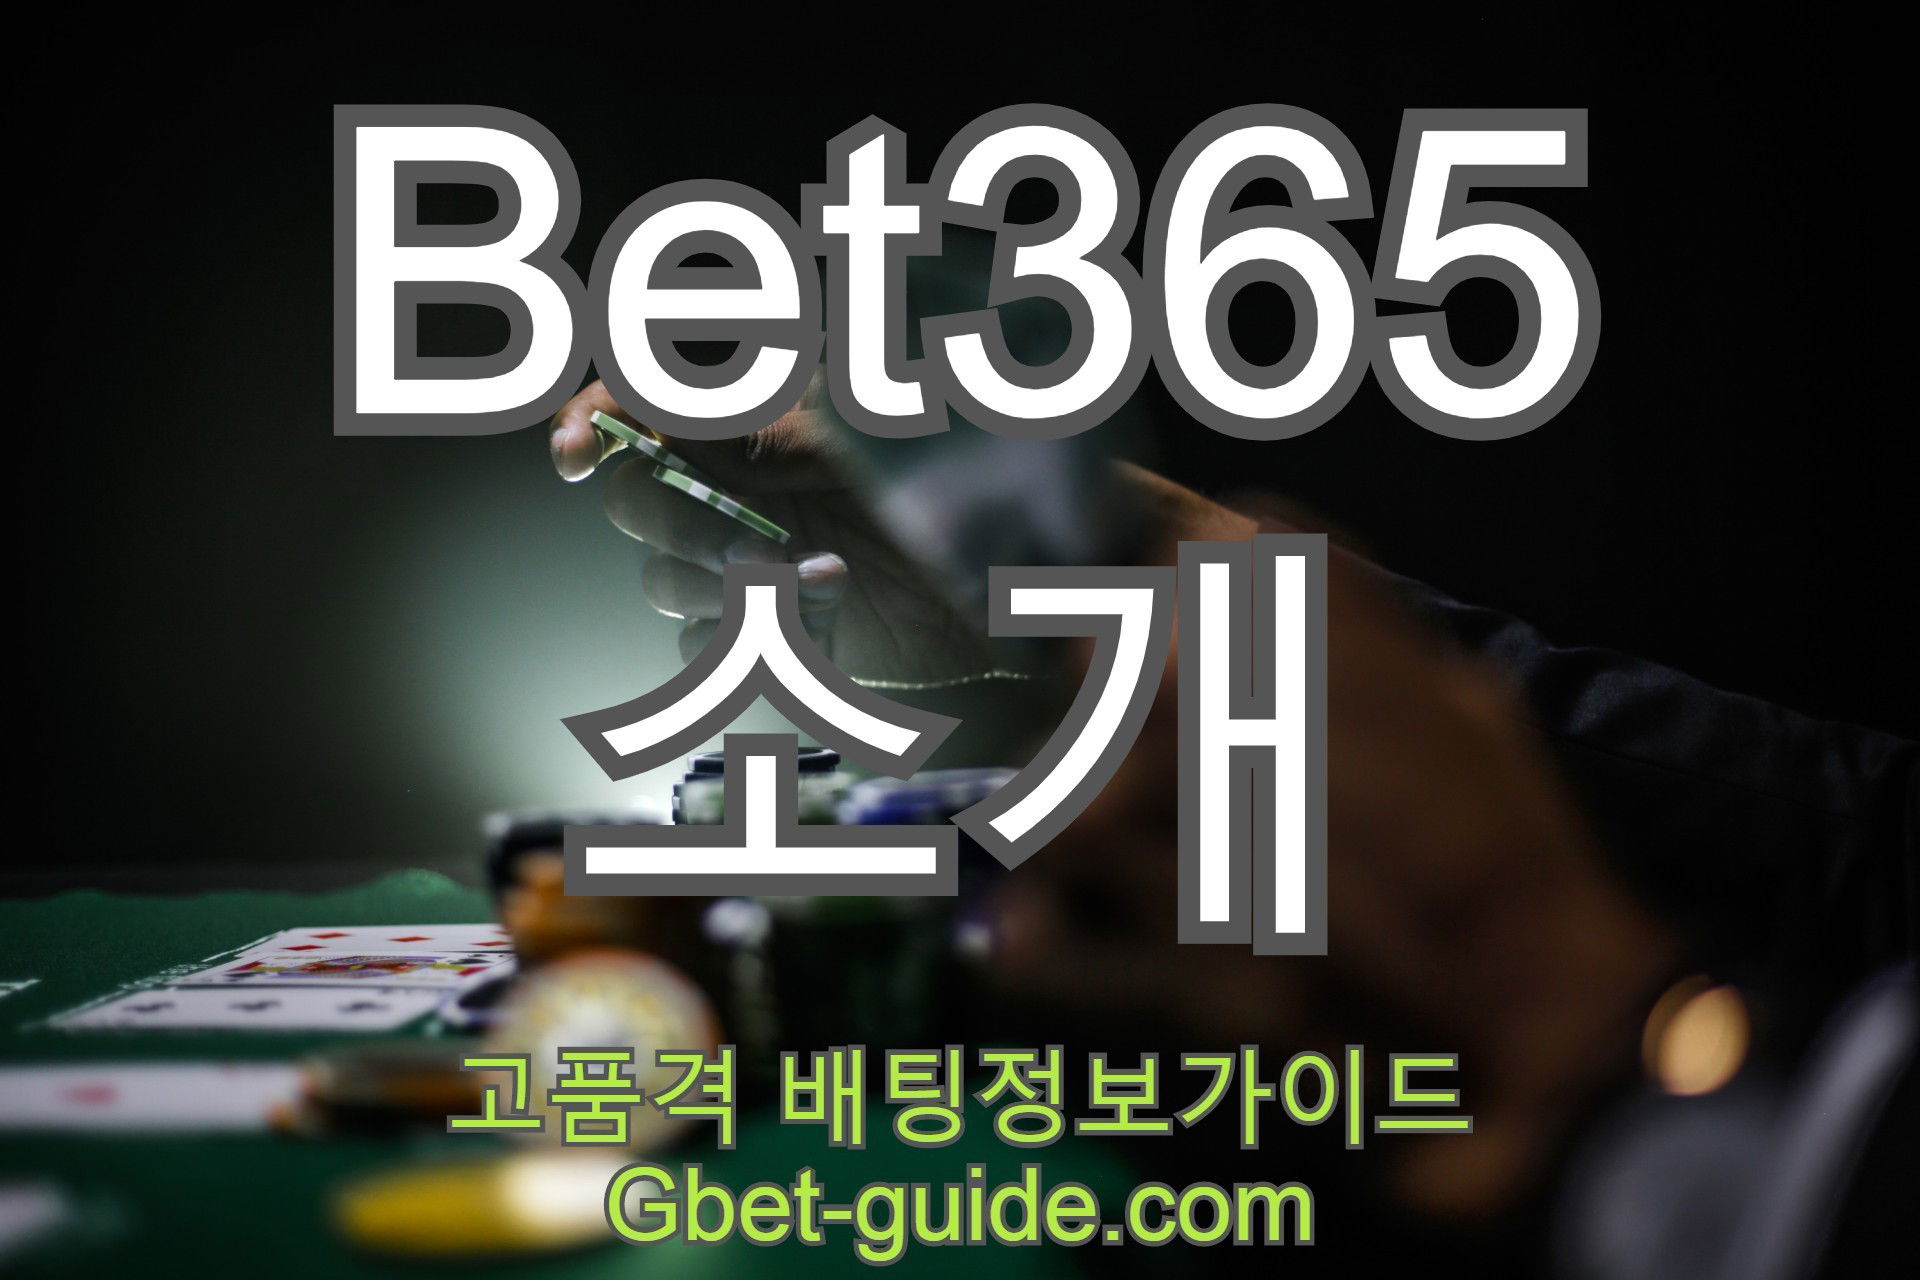 벳365[Bet365] 소개 및 가입 이용방법 Gbet-guide.com